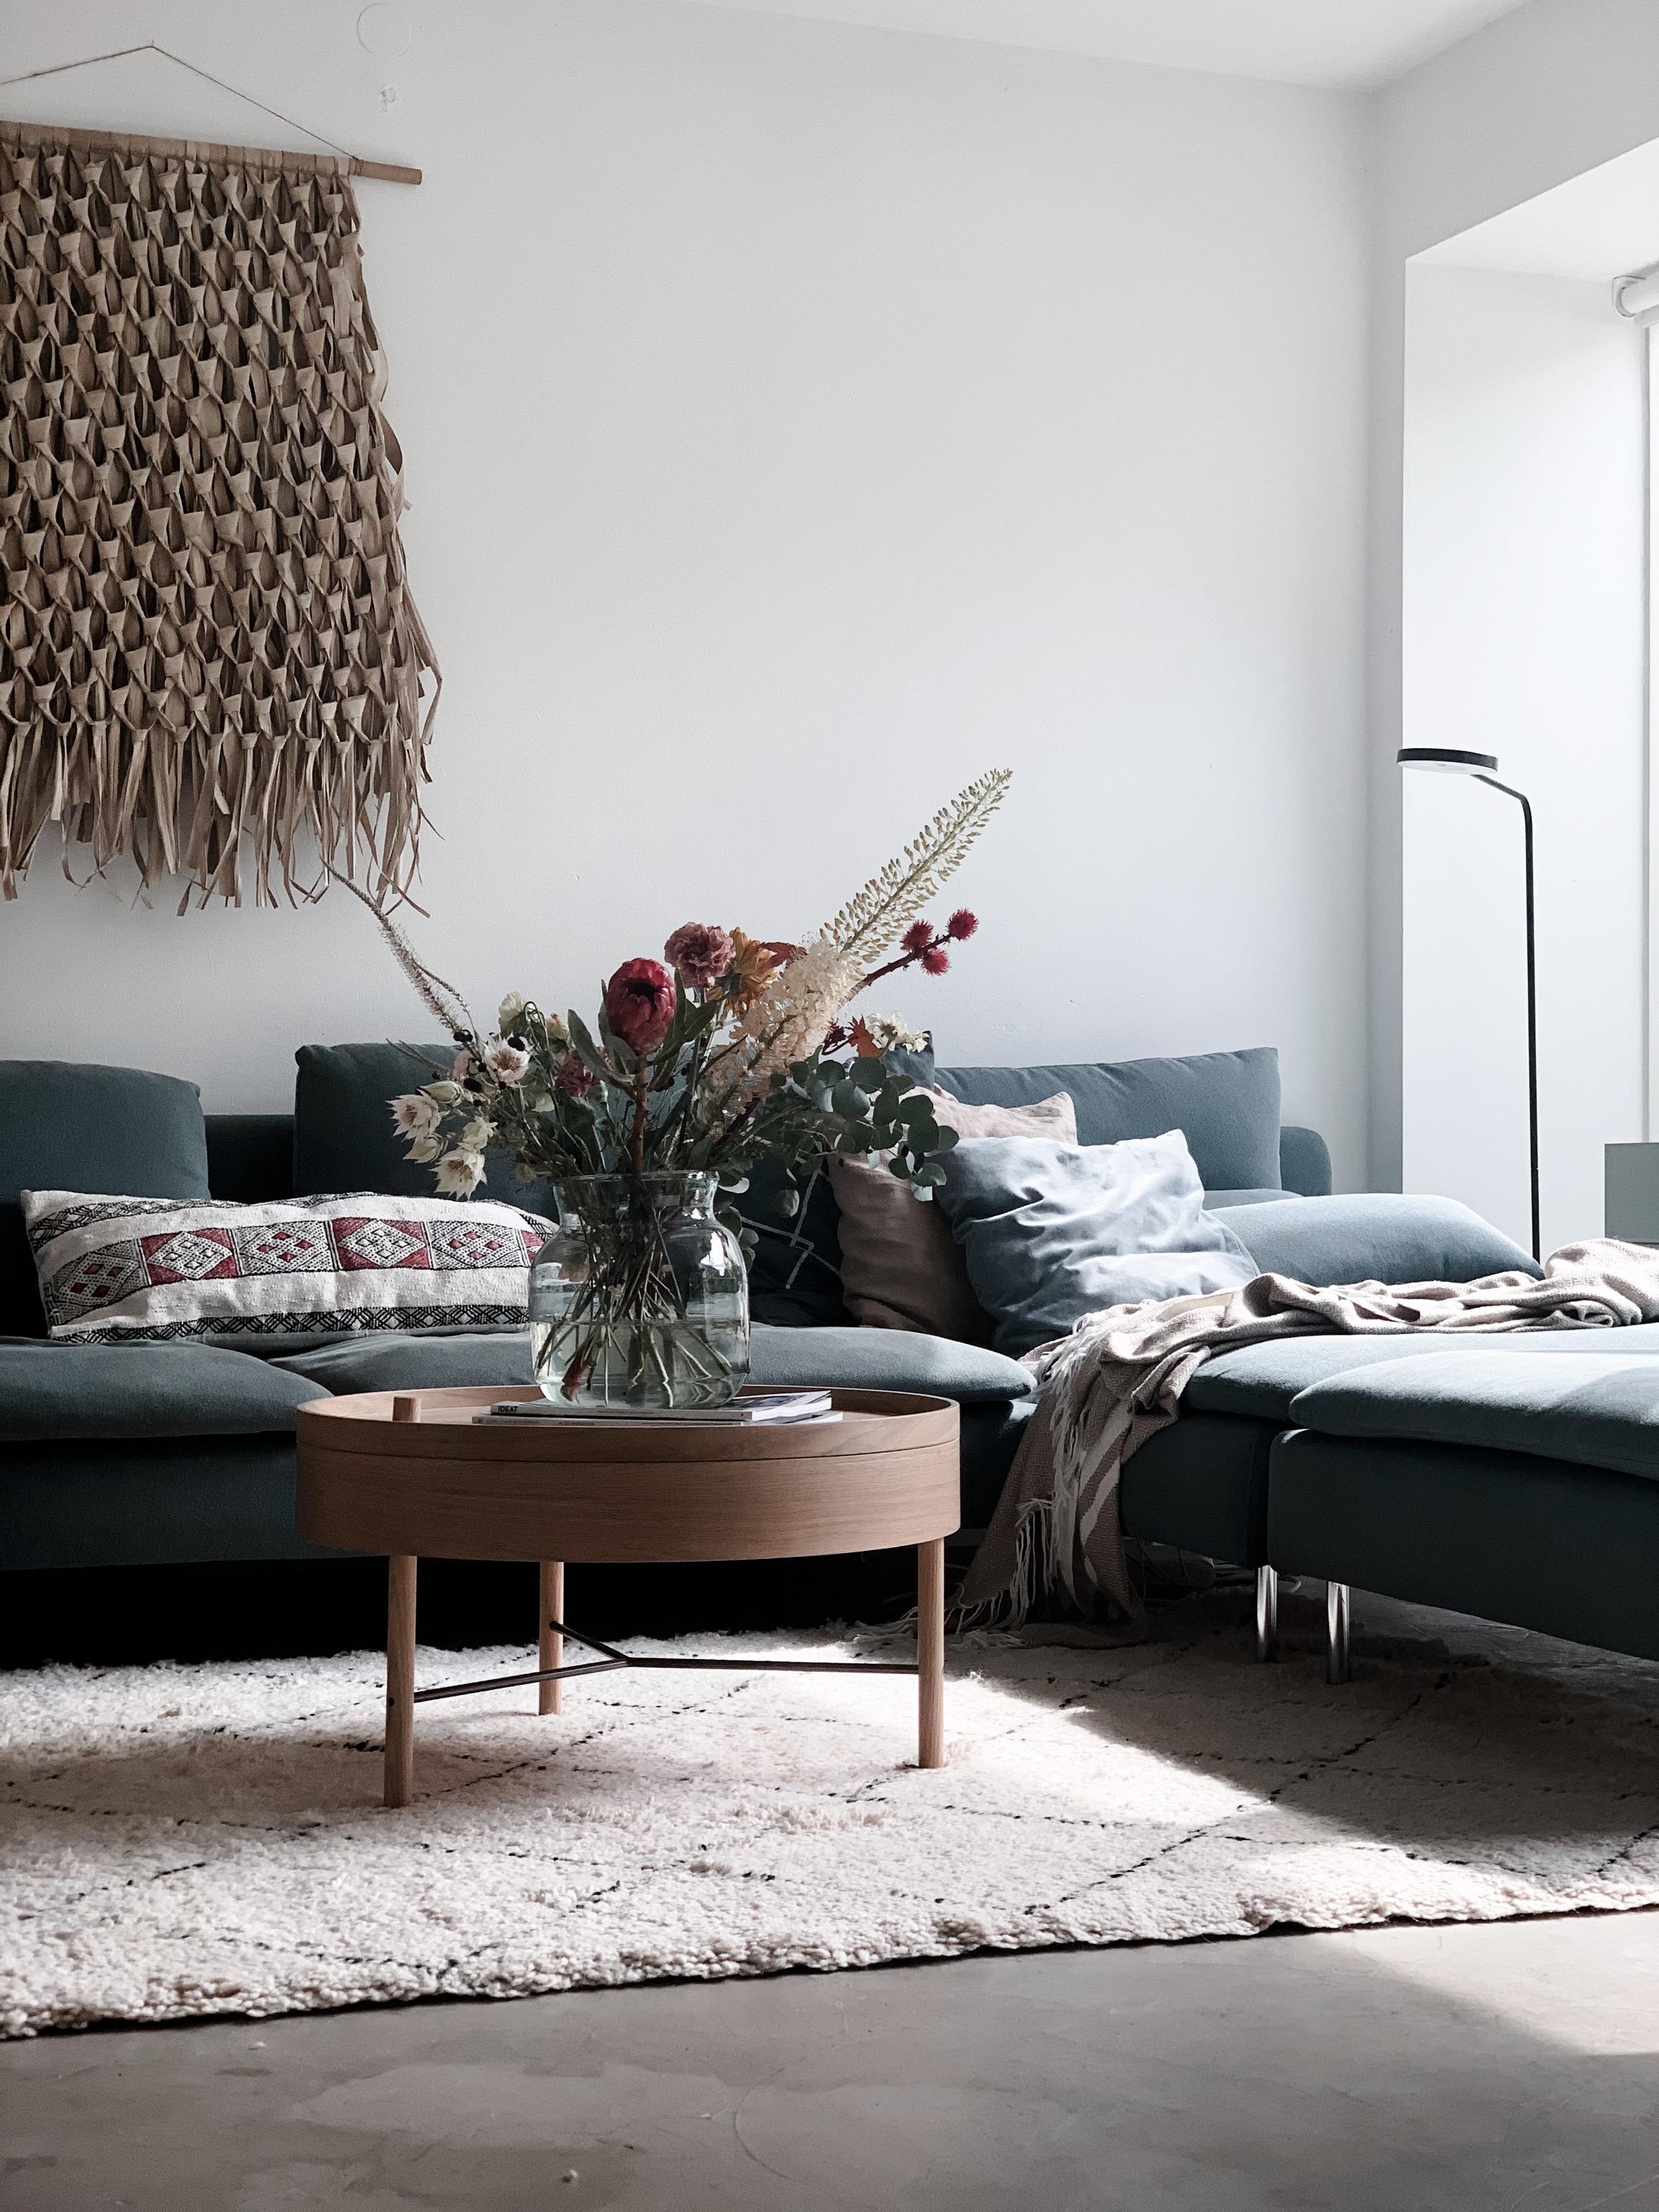 Mein neuer Couchtisch 🤍 #scandinaviandesign#livingroom#ikea#turningtable#designbestseller#bohostyle#bohemianhome